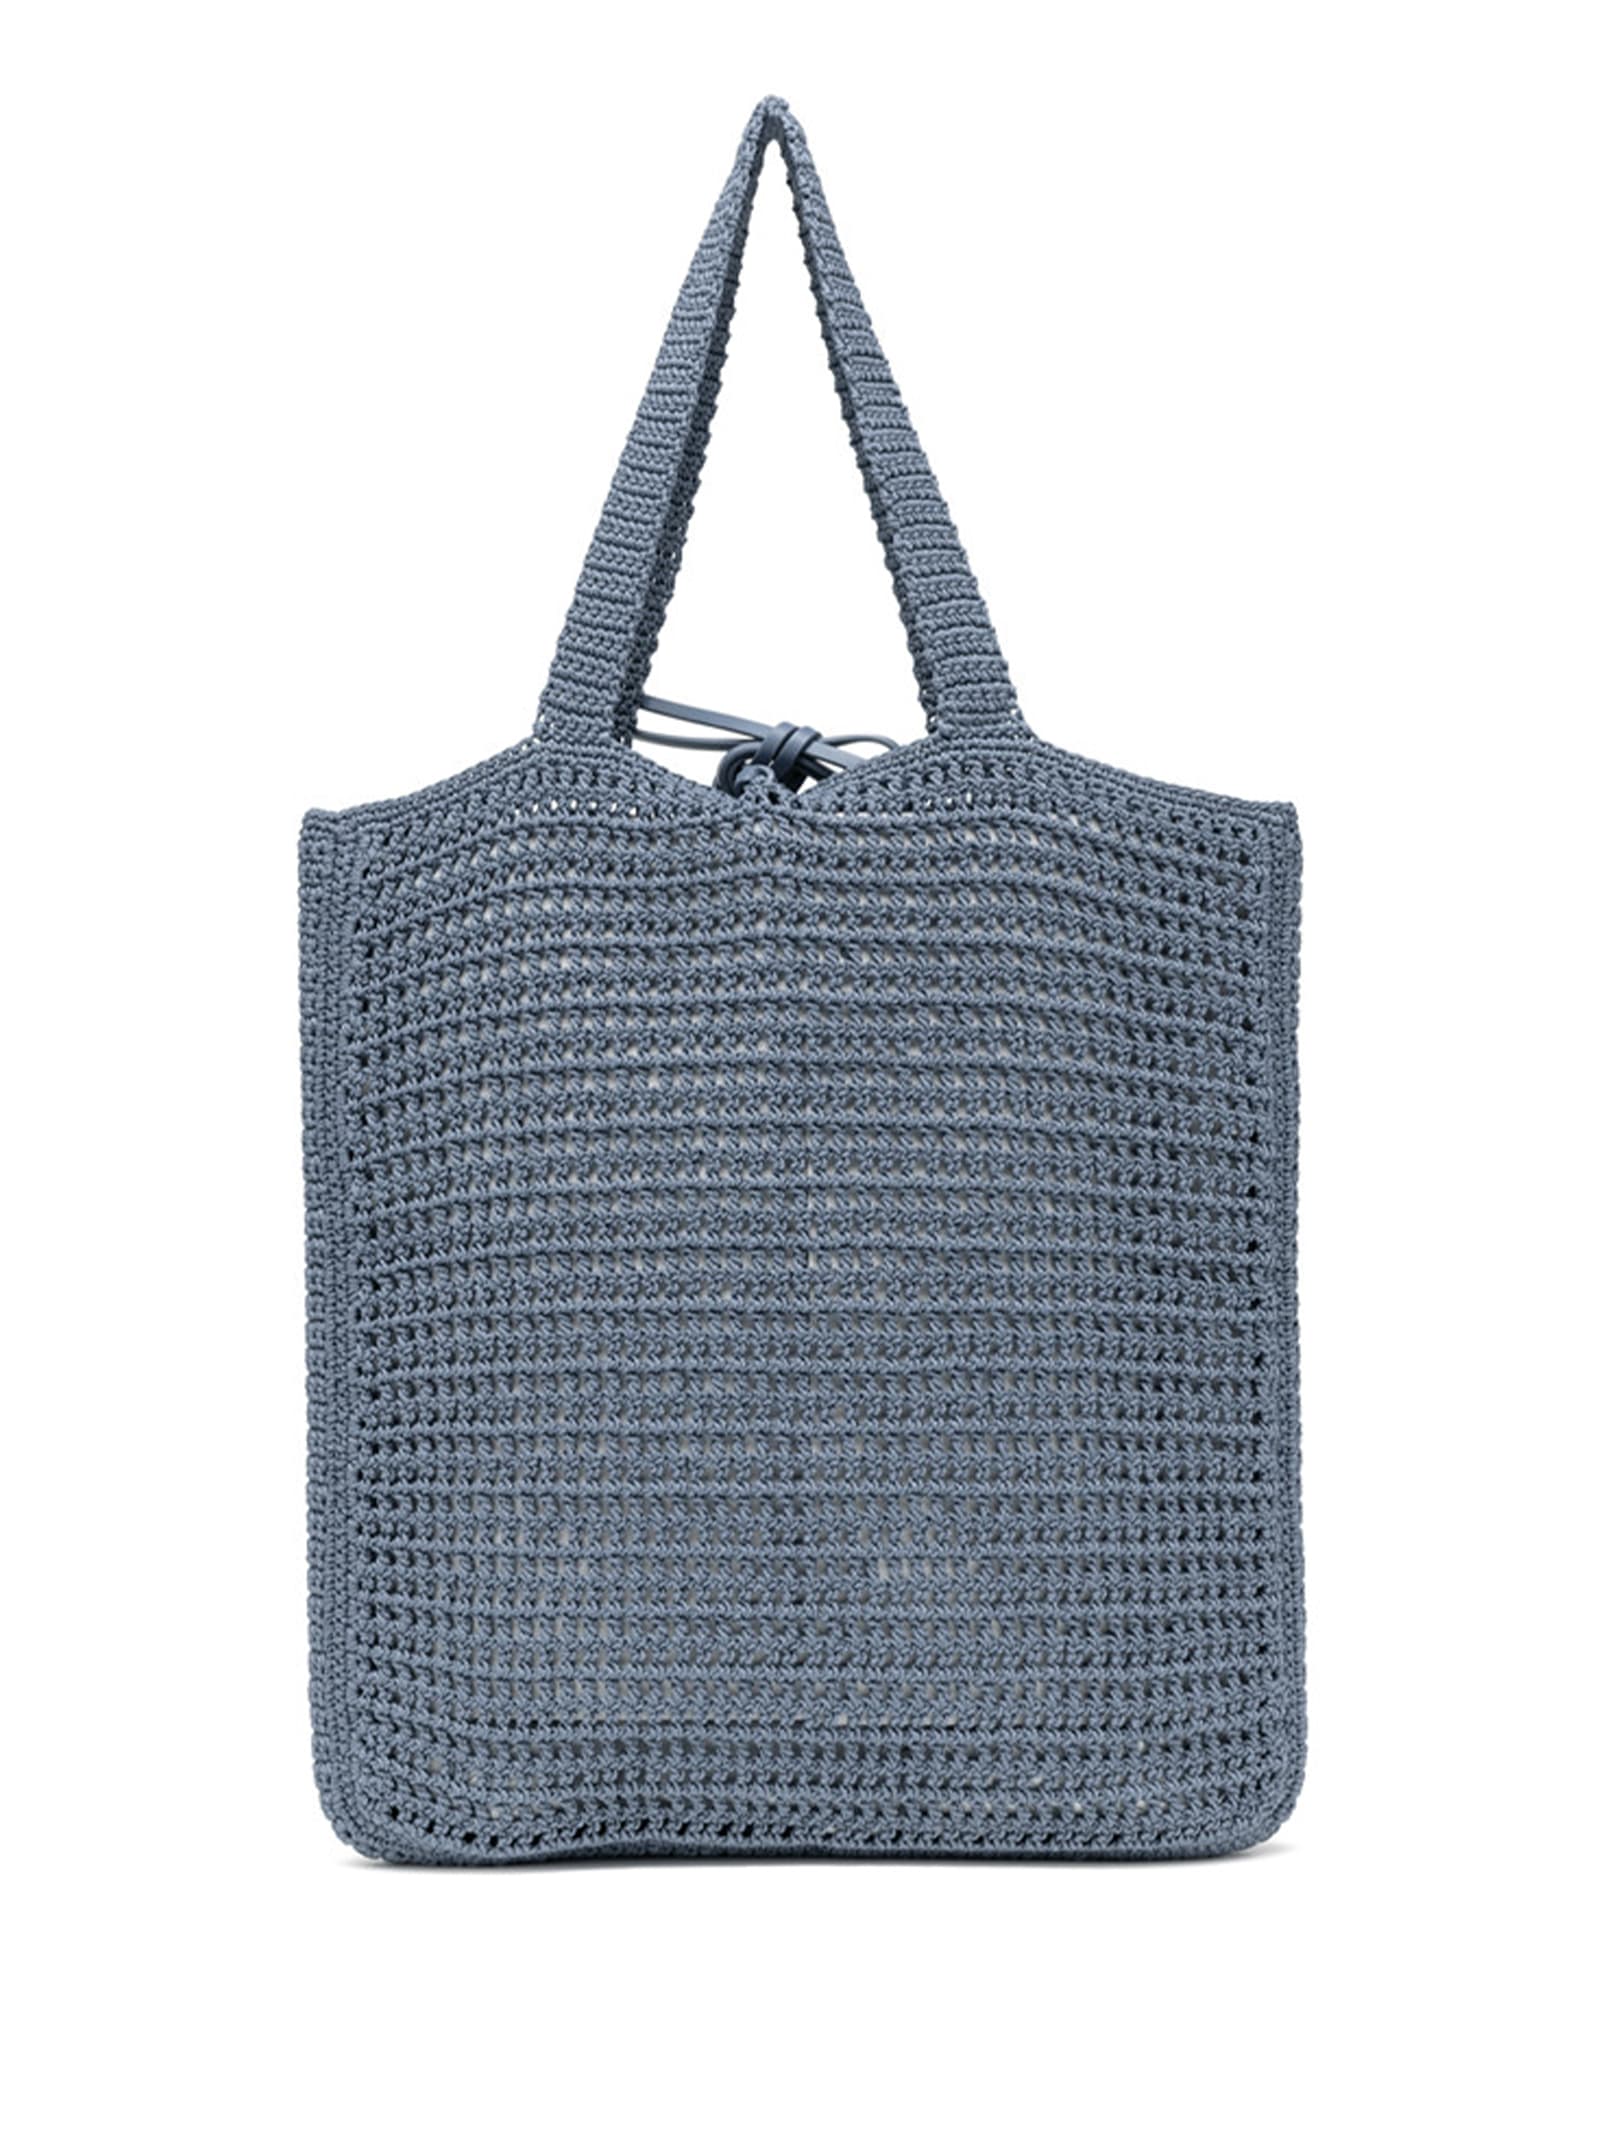 Shop Gianni Chiarini Vittoria Bluette Shopping Bag In Crochet Fabric In Artico